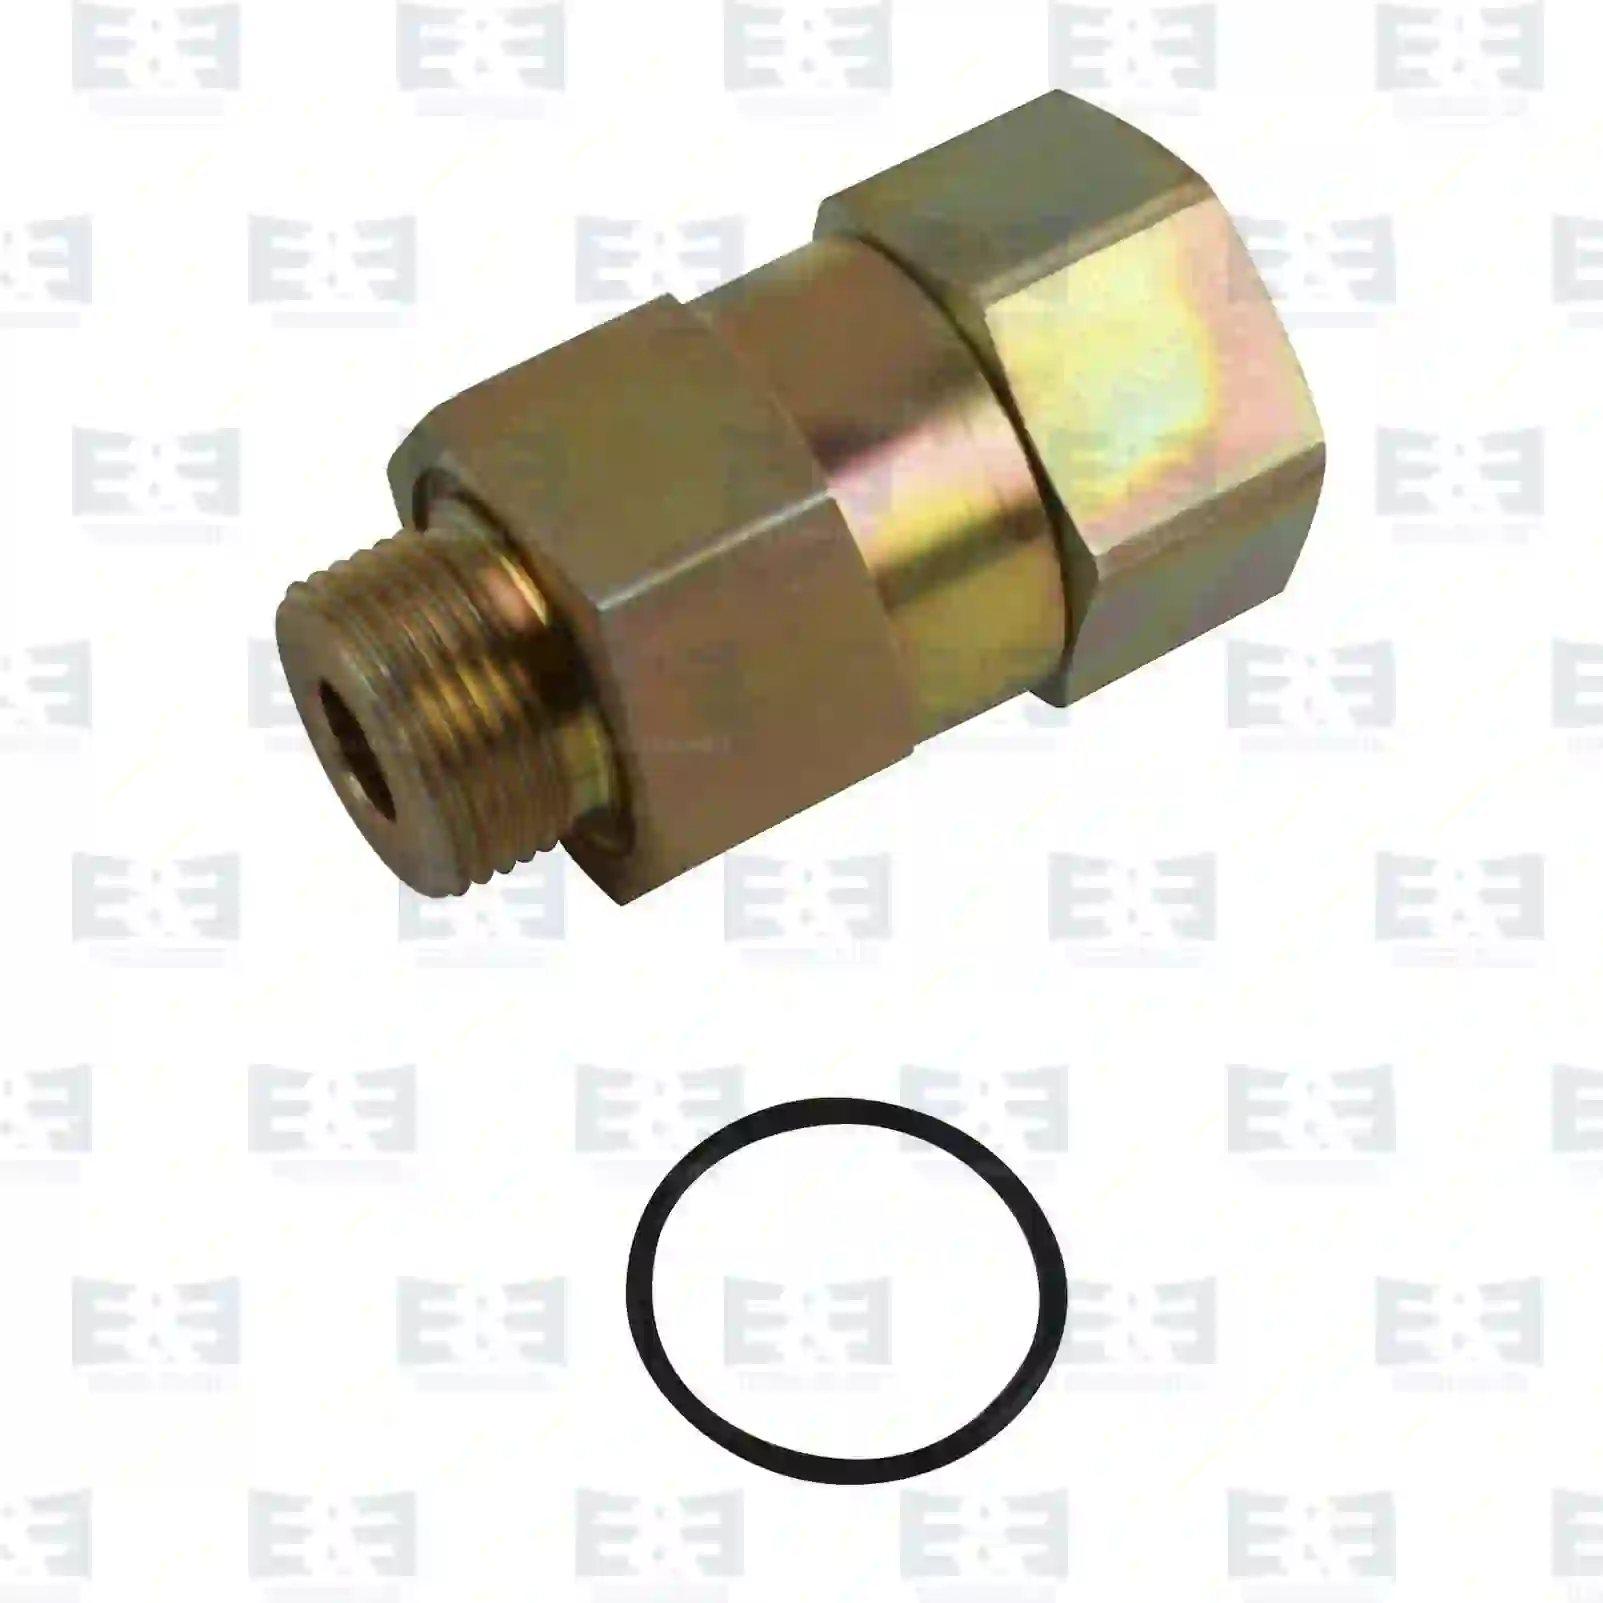  Relief valve || E&E Truck Spare Parts | Truck Spare Parts, Auotomotive Spare Parts